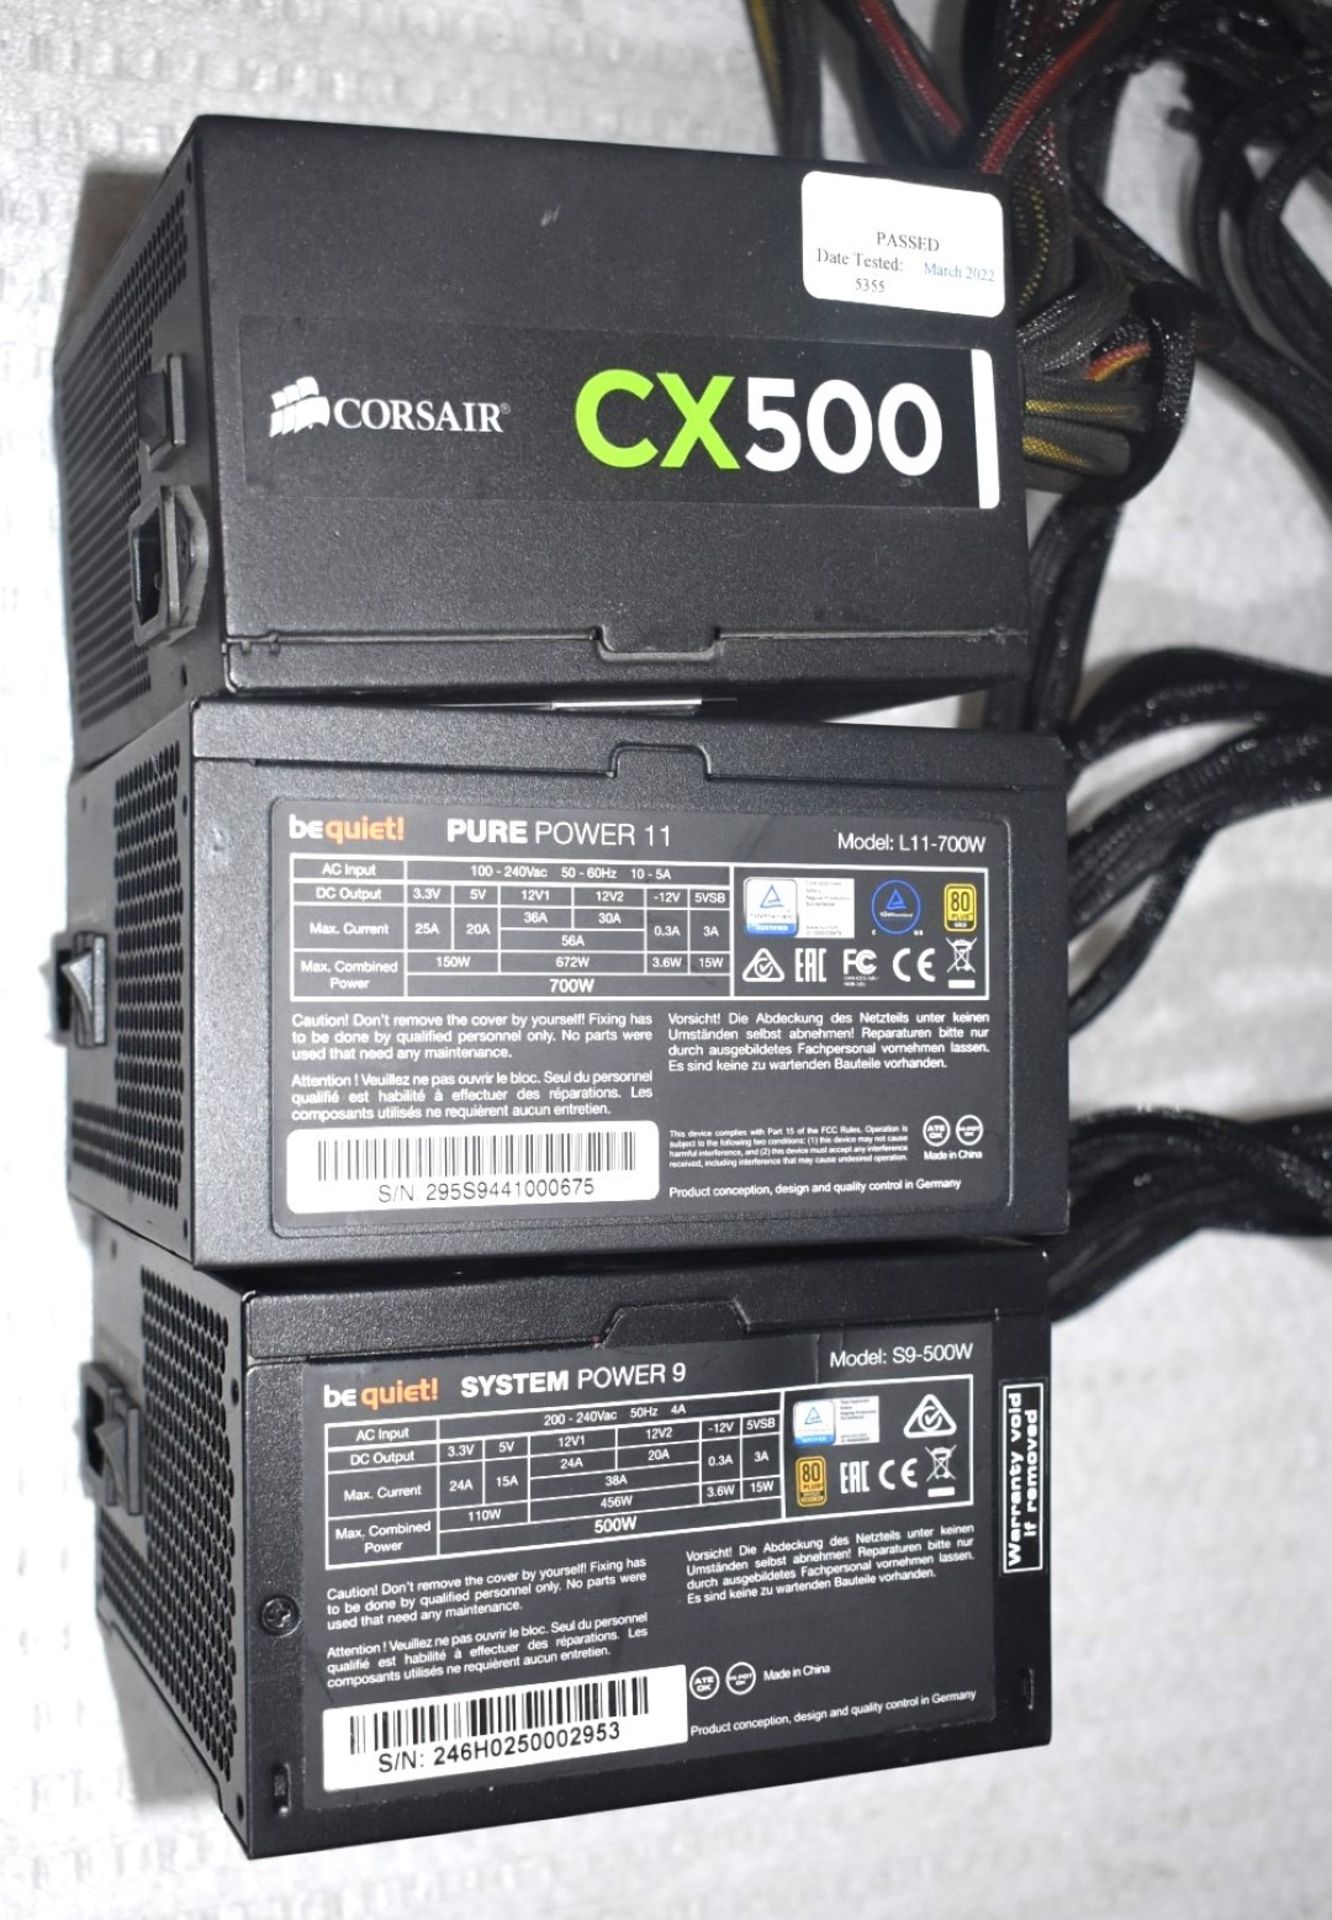 3 x Desktop PC Power Supplies - Brands Include Corsair CX500, BeQuiet Purepower 9 and BeQuiet - Image 3 of 3